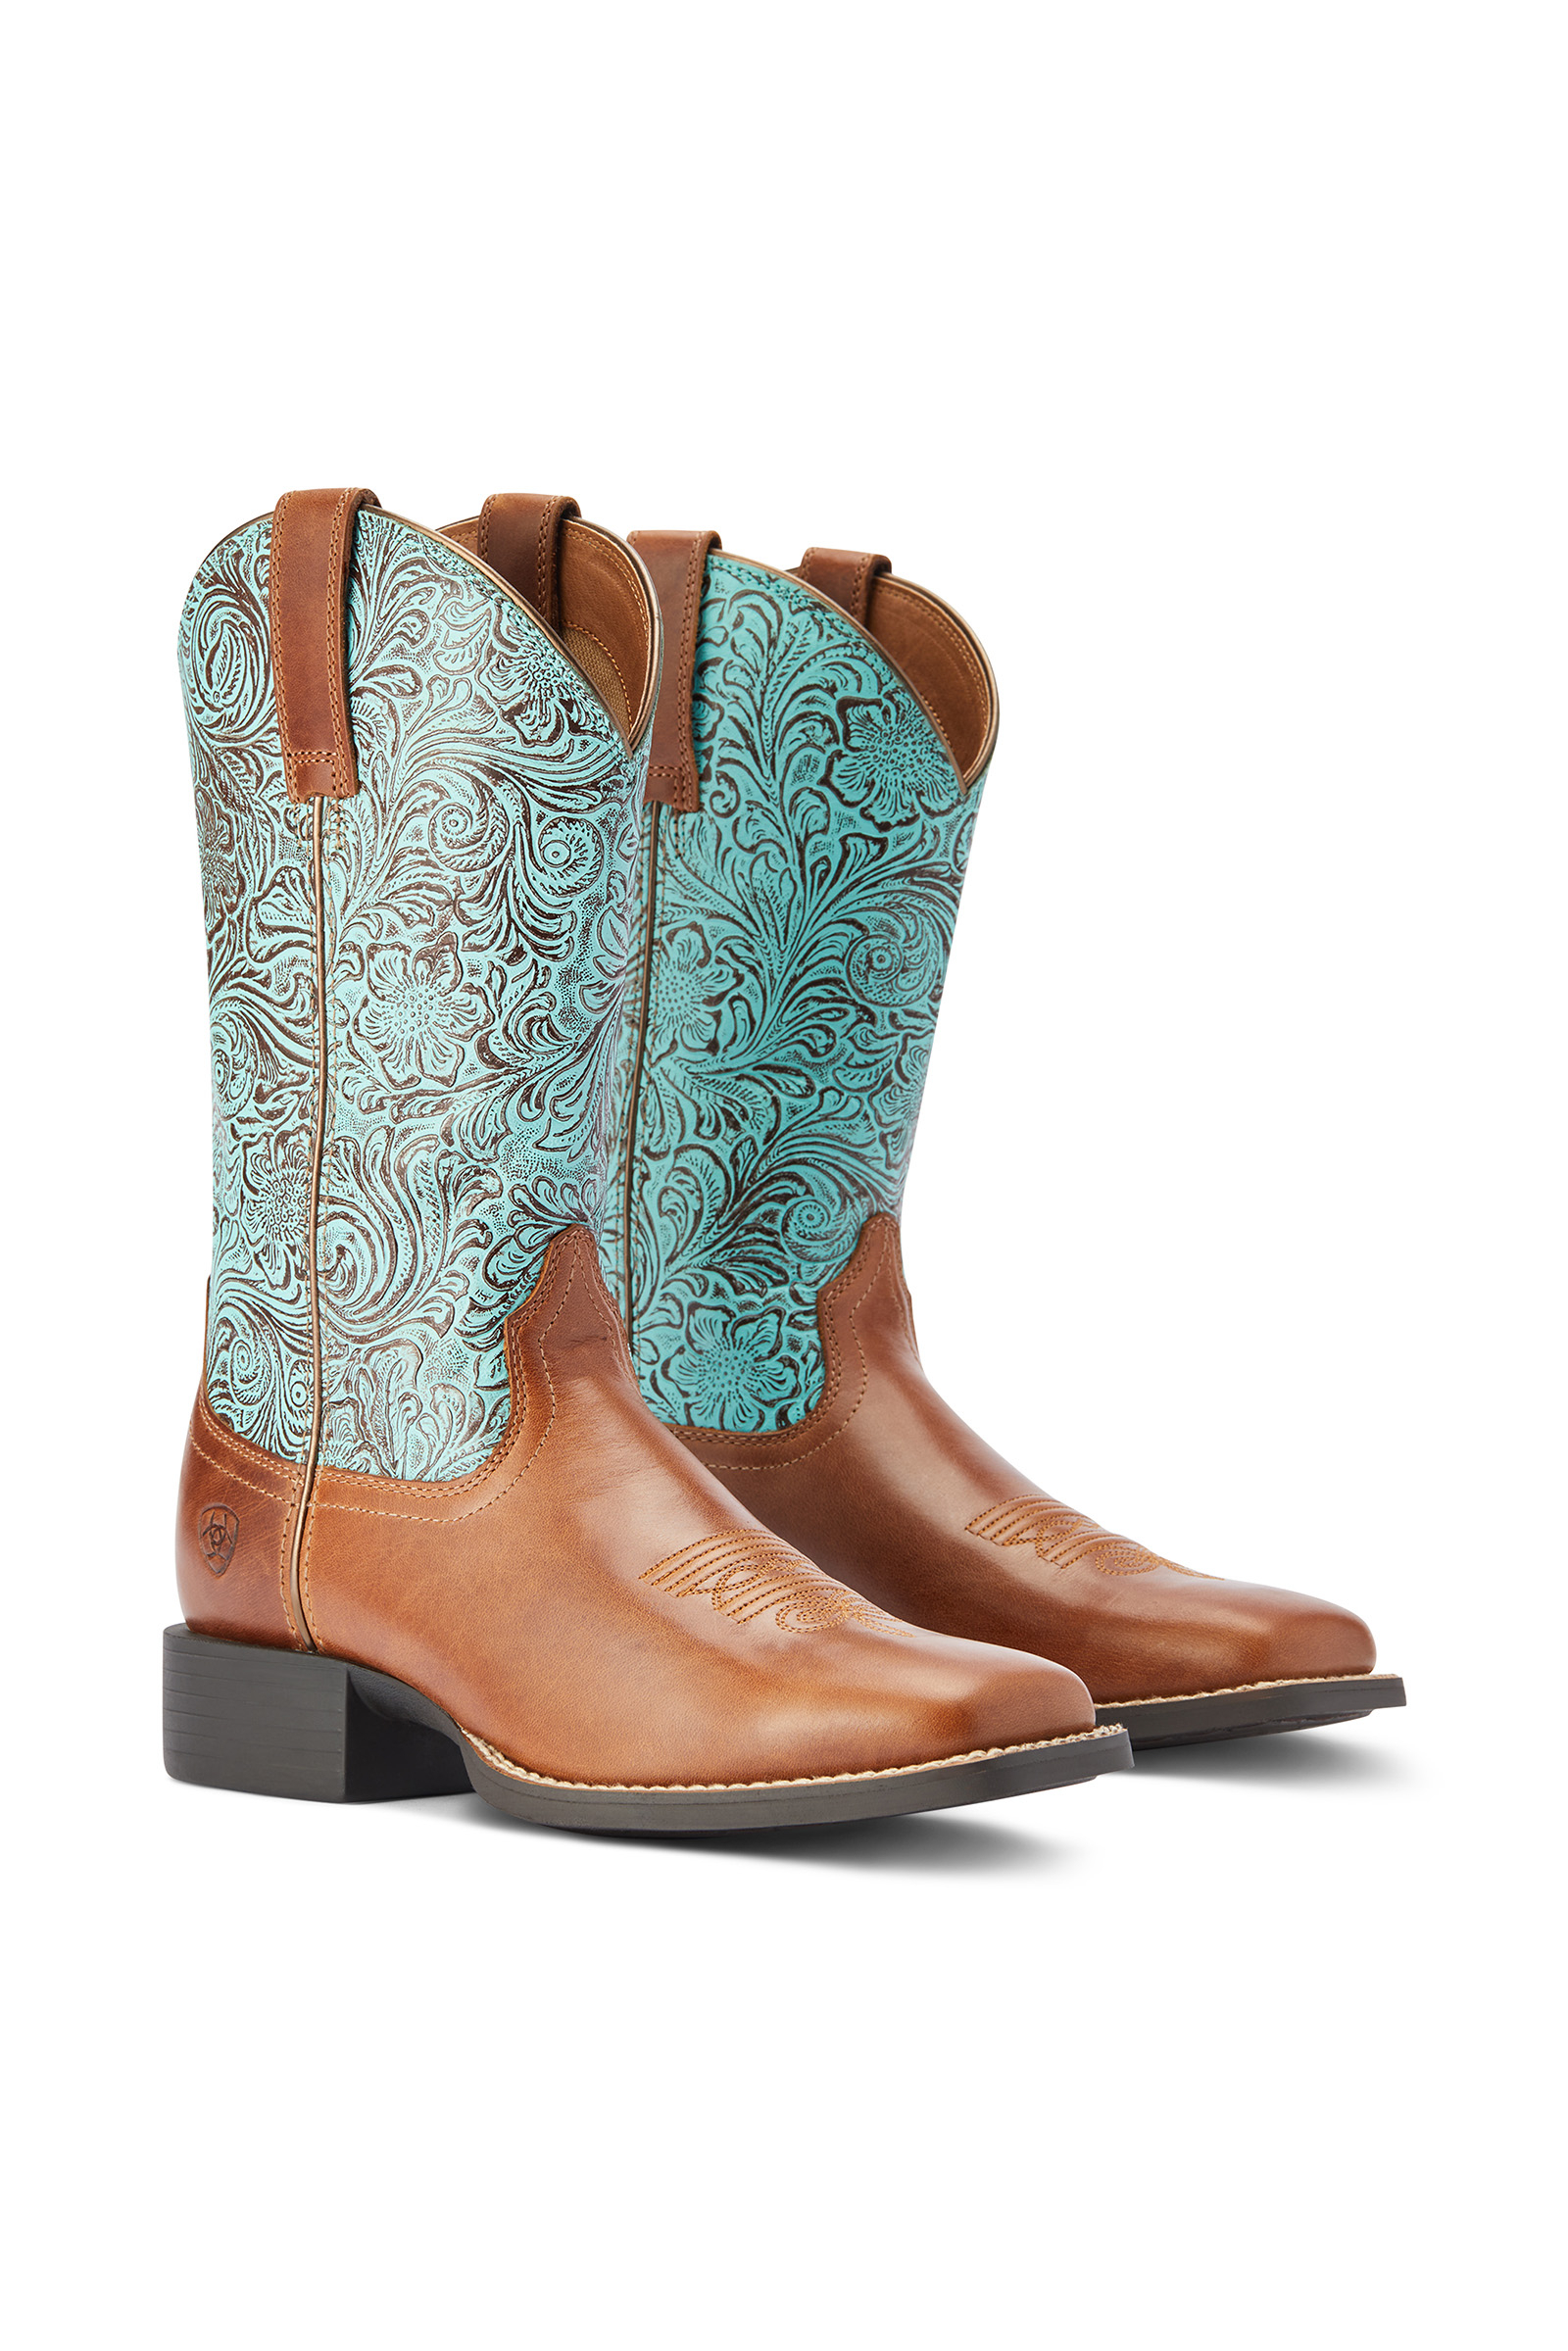 Koop Ariat Round Up Western Boots, dames horze.nl